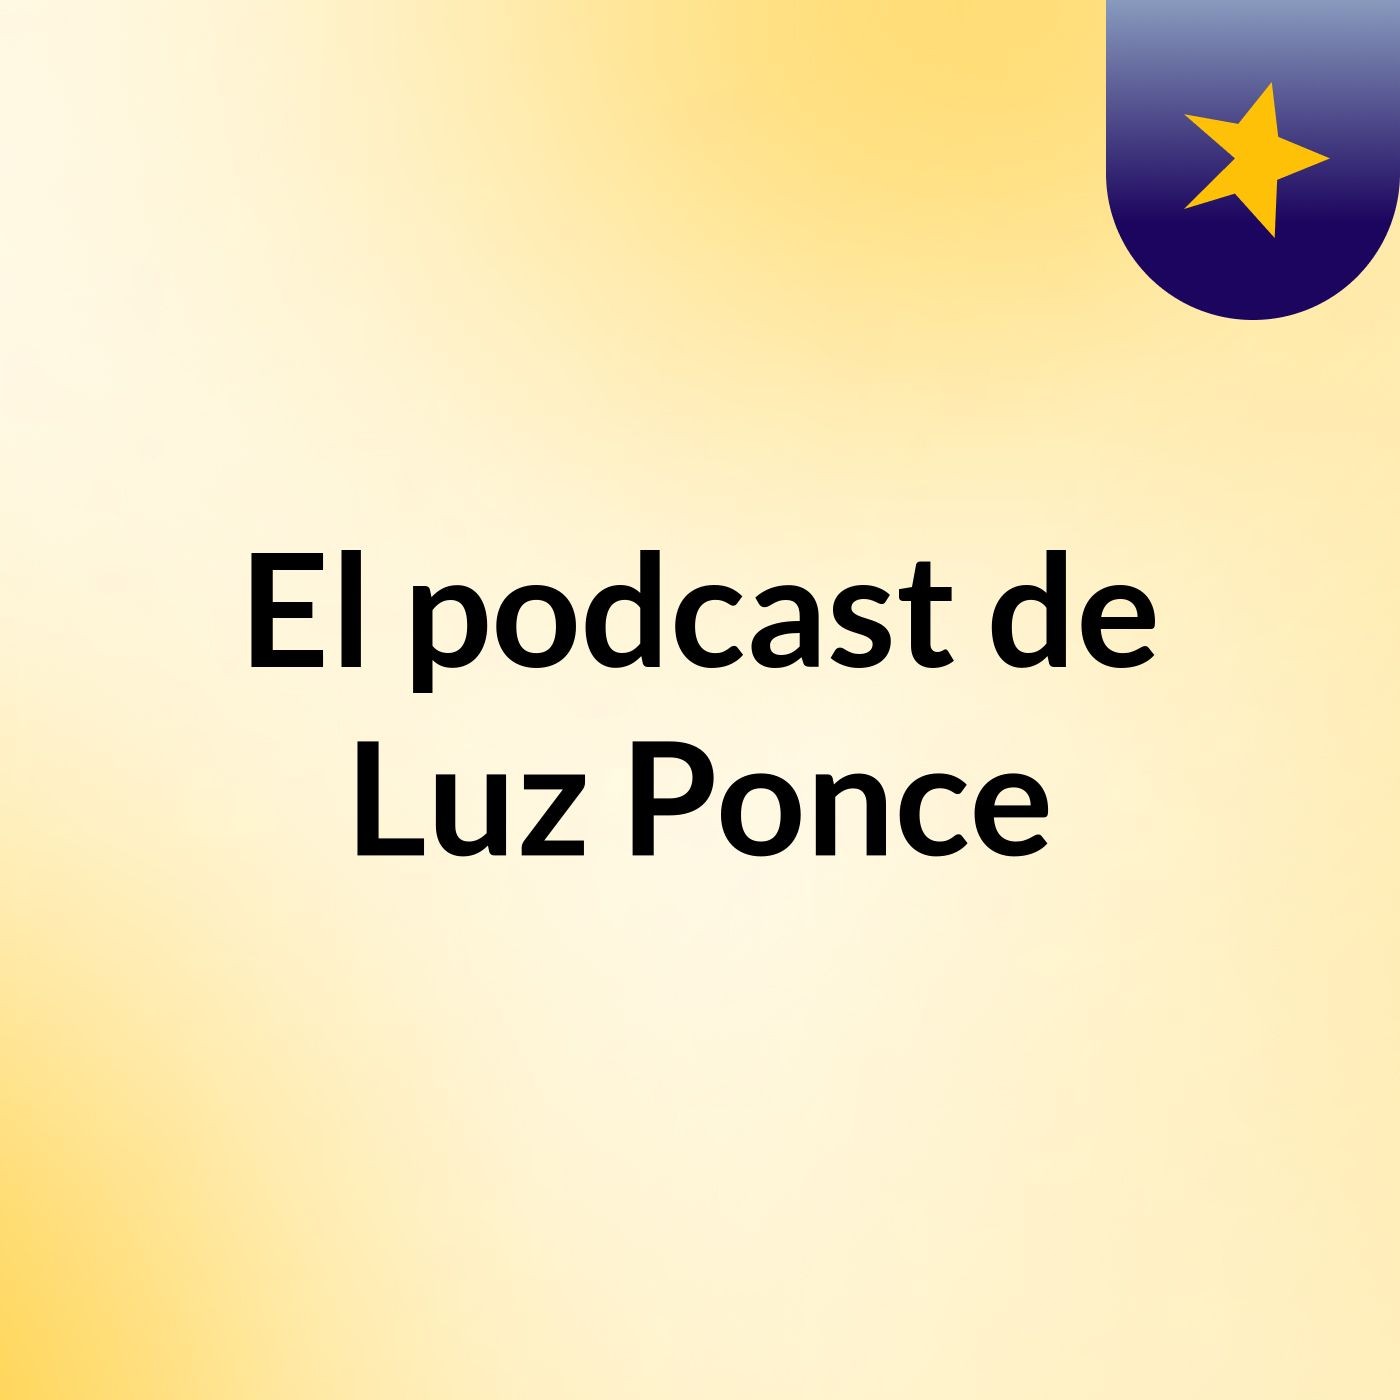 Episodio 19 - El podcast de Luz Ponce